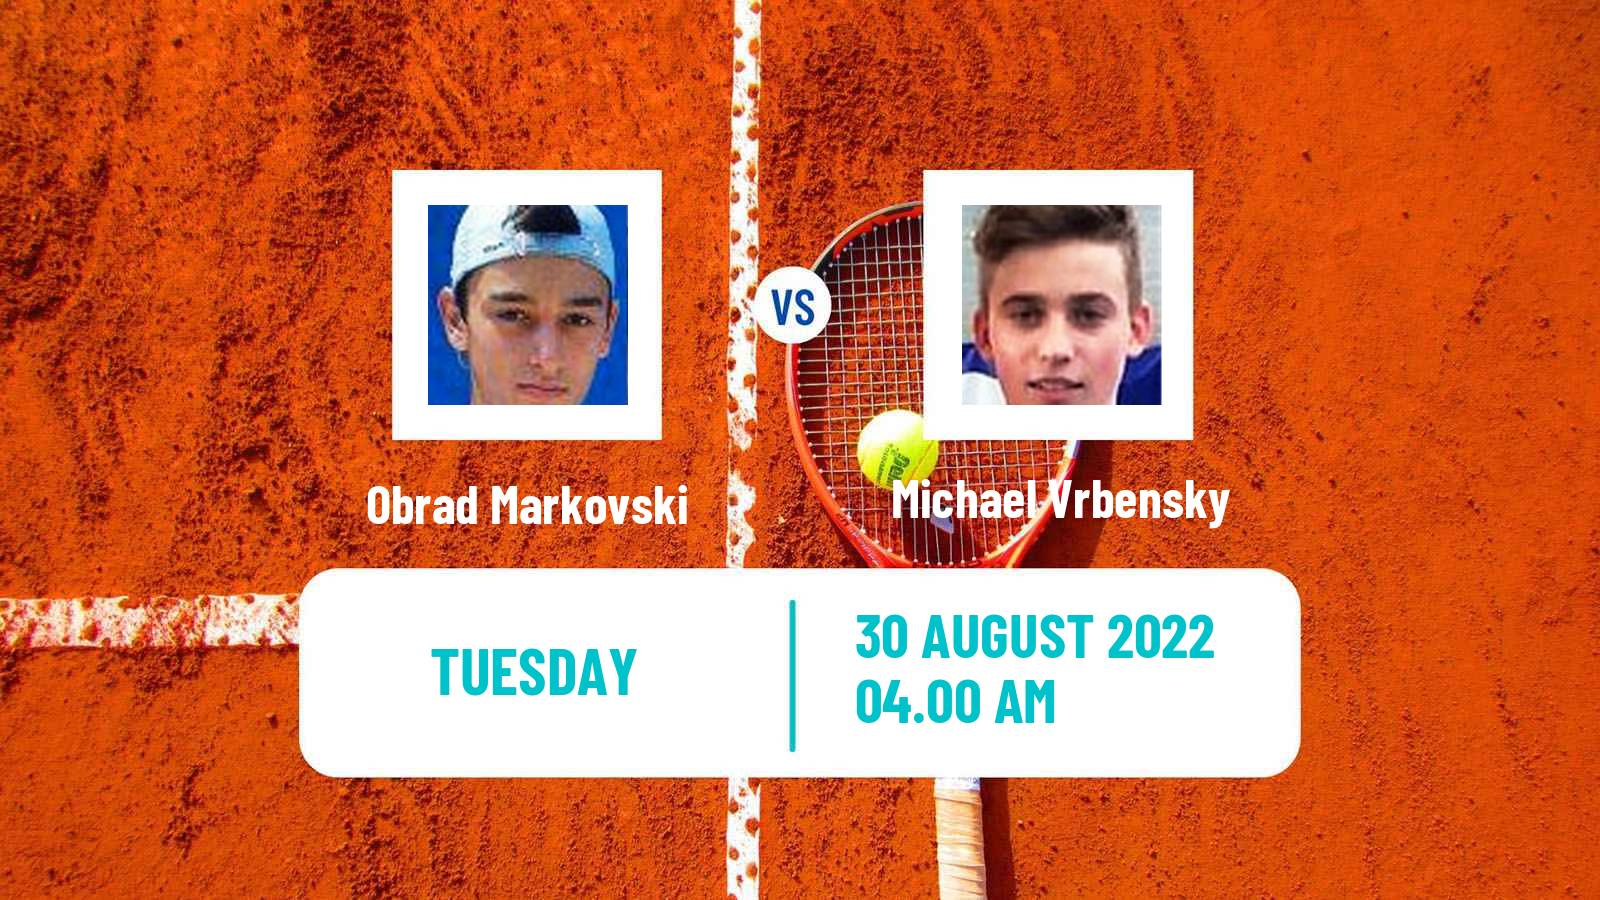 Tennis ITF Tournaments Obrad Markovski - Michael Vrbensky